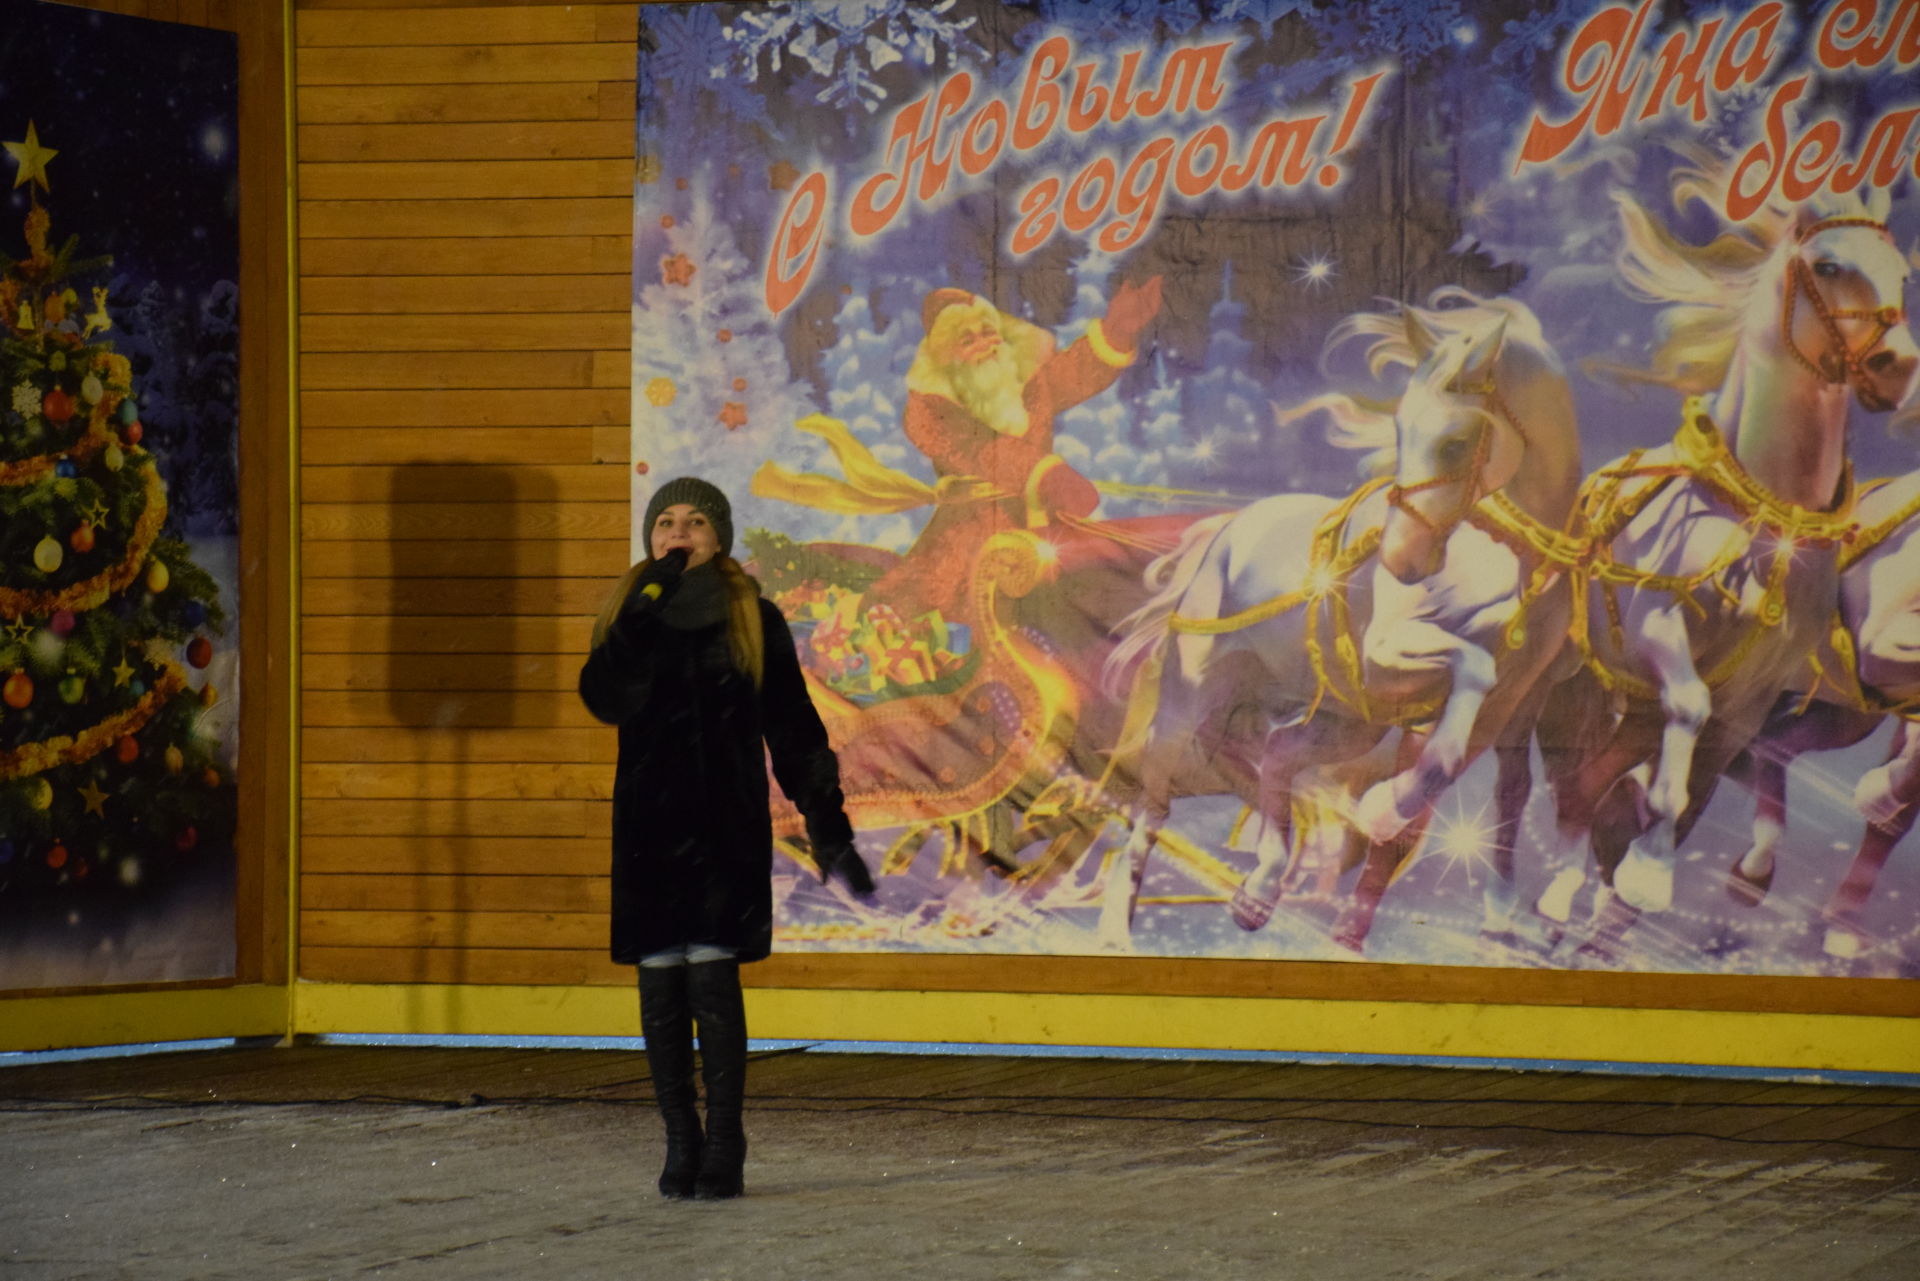 Нурлатцы проводили Старый Новый год танцами на центральной площади города